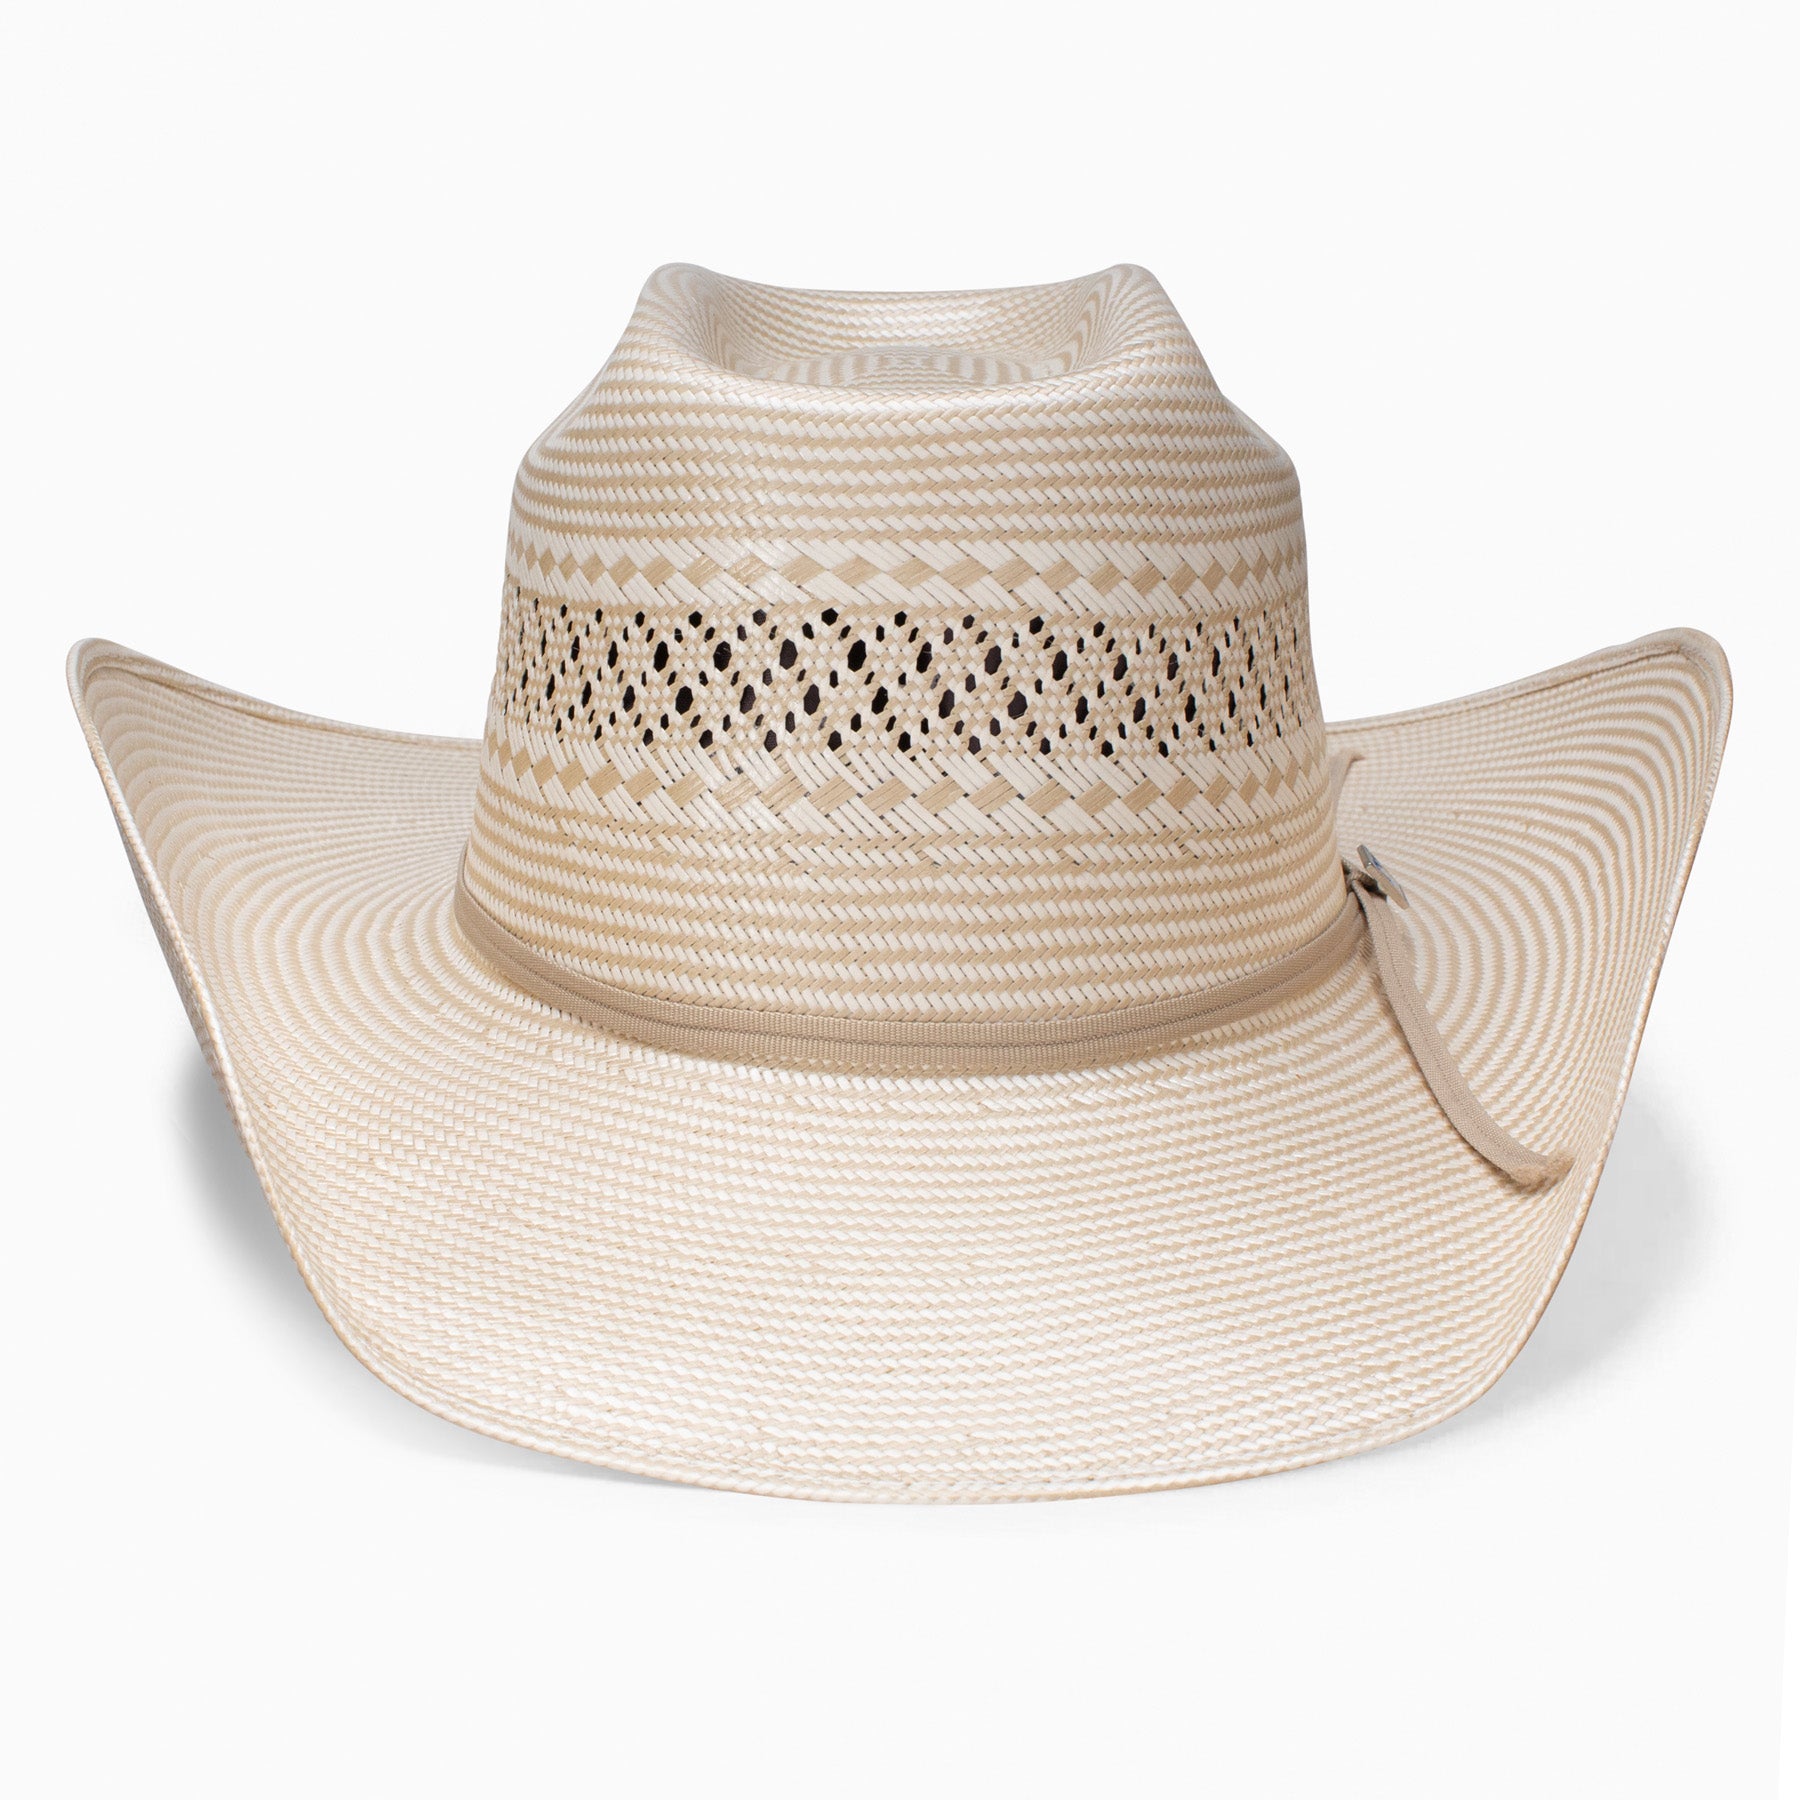 Cojo Special Cowboy Hat – Resistol